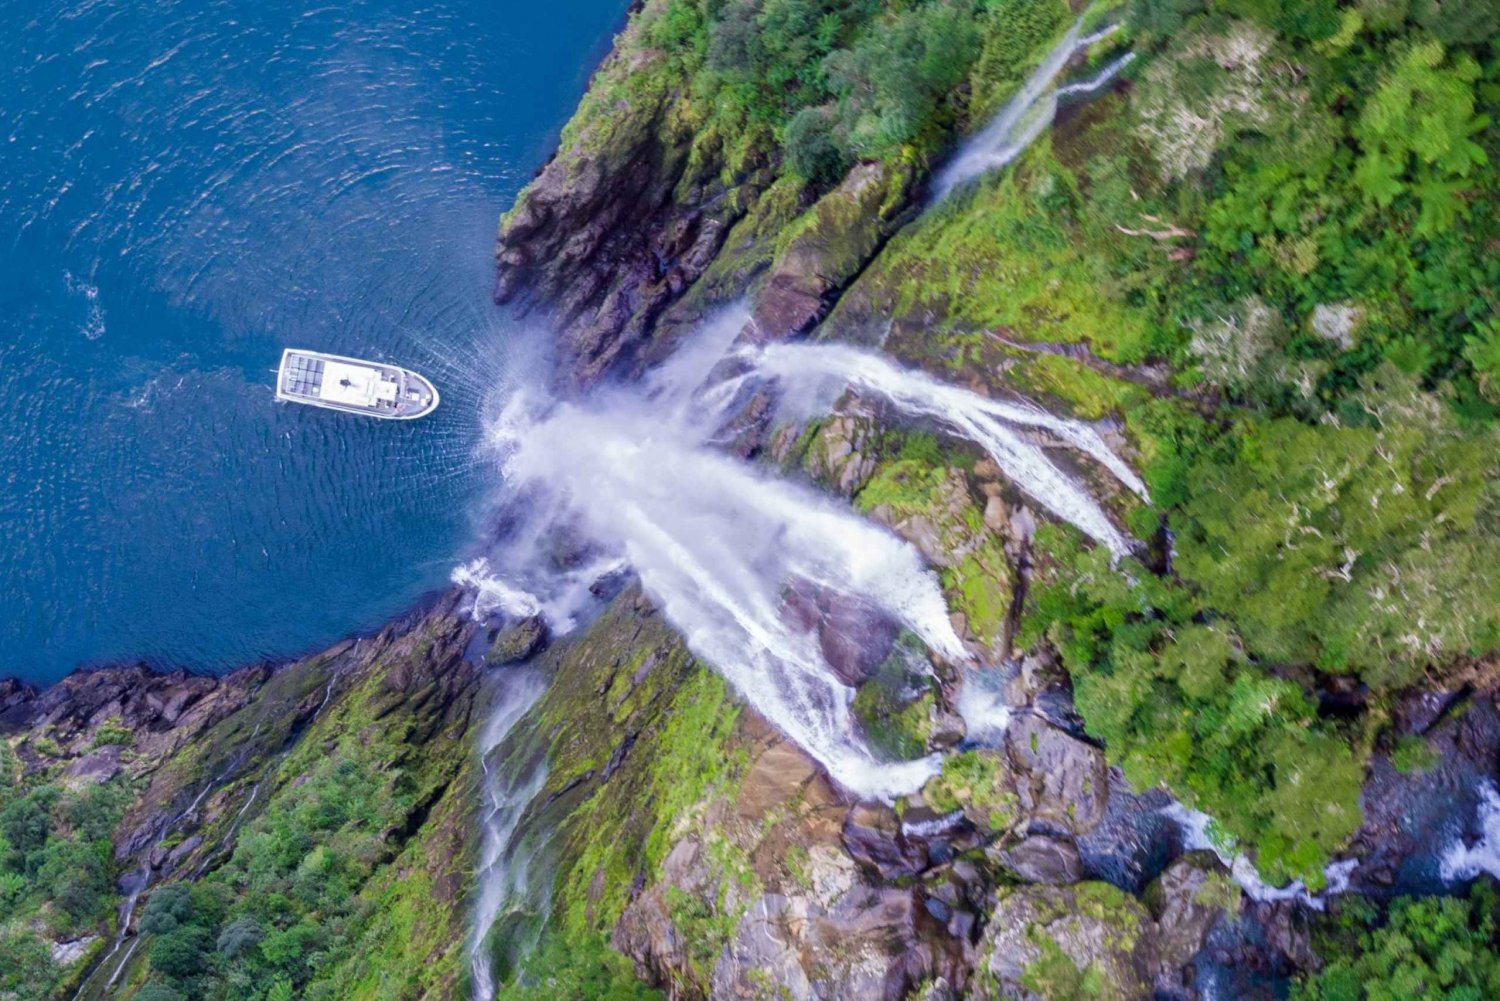 Milford Sound: Boutique-krydstogt med småbåde